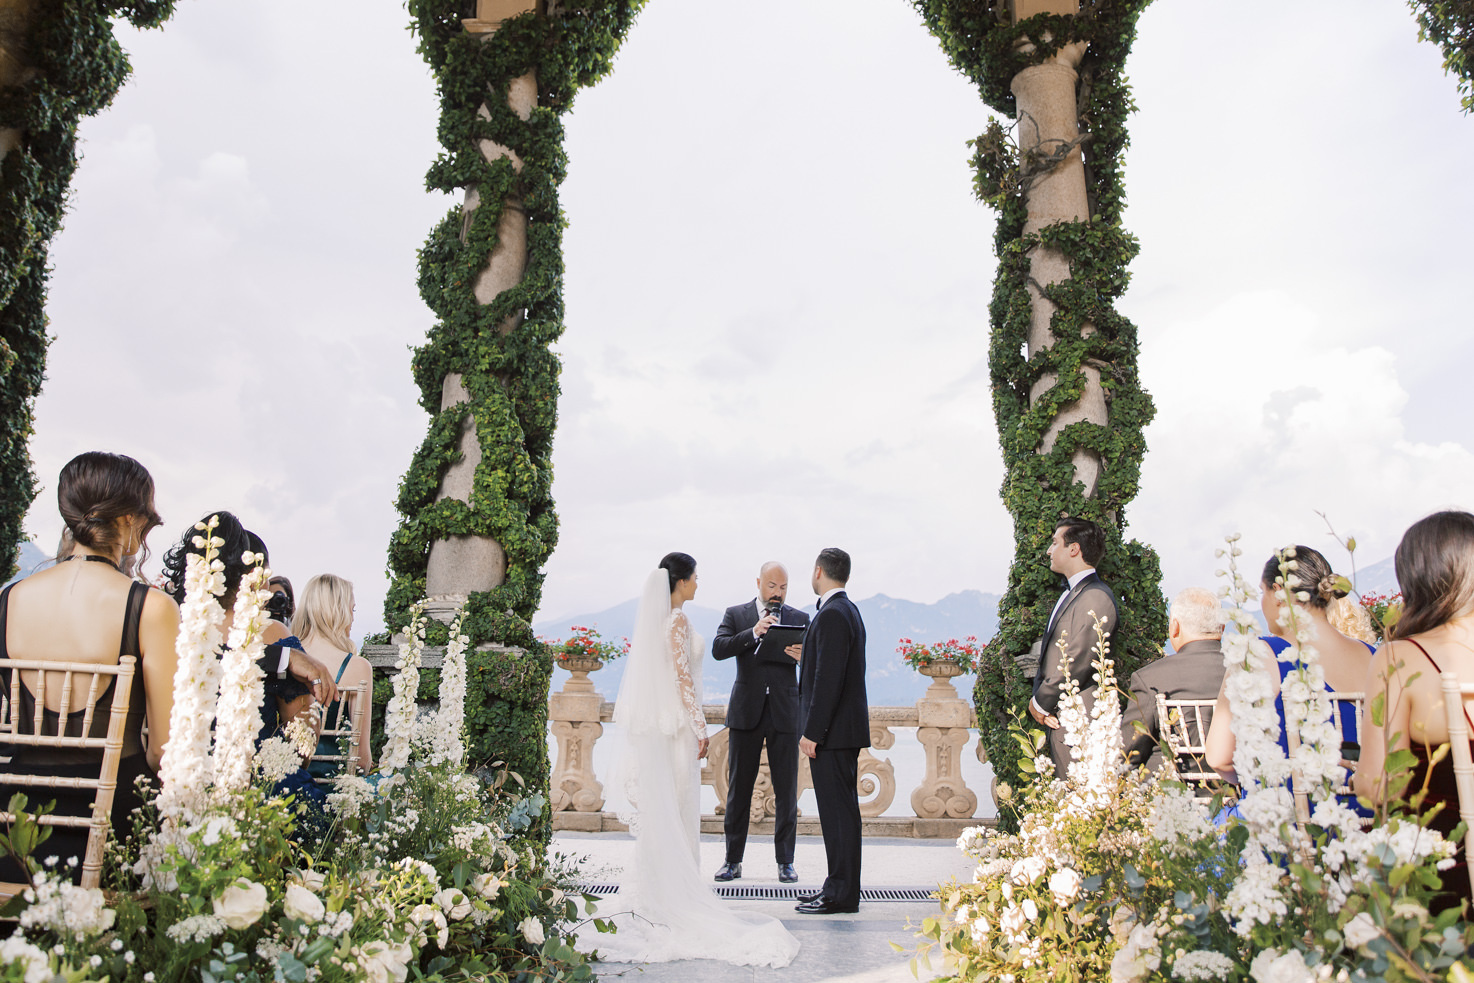 Wedding ceremony at Villa del Balbianello